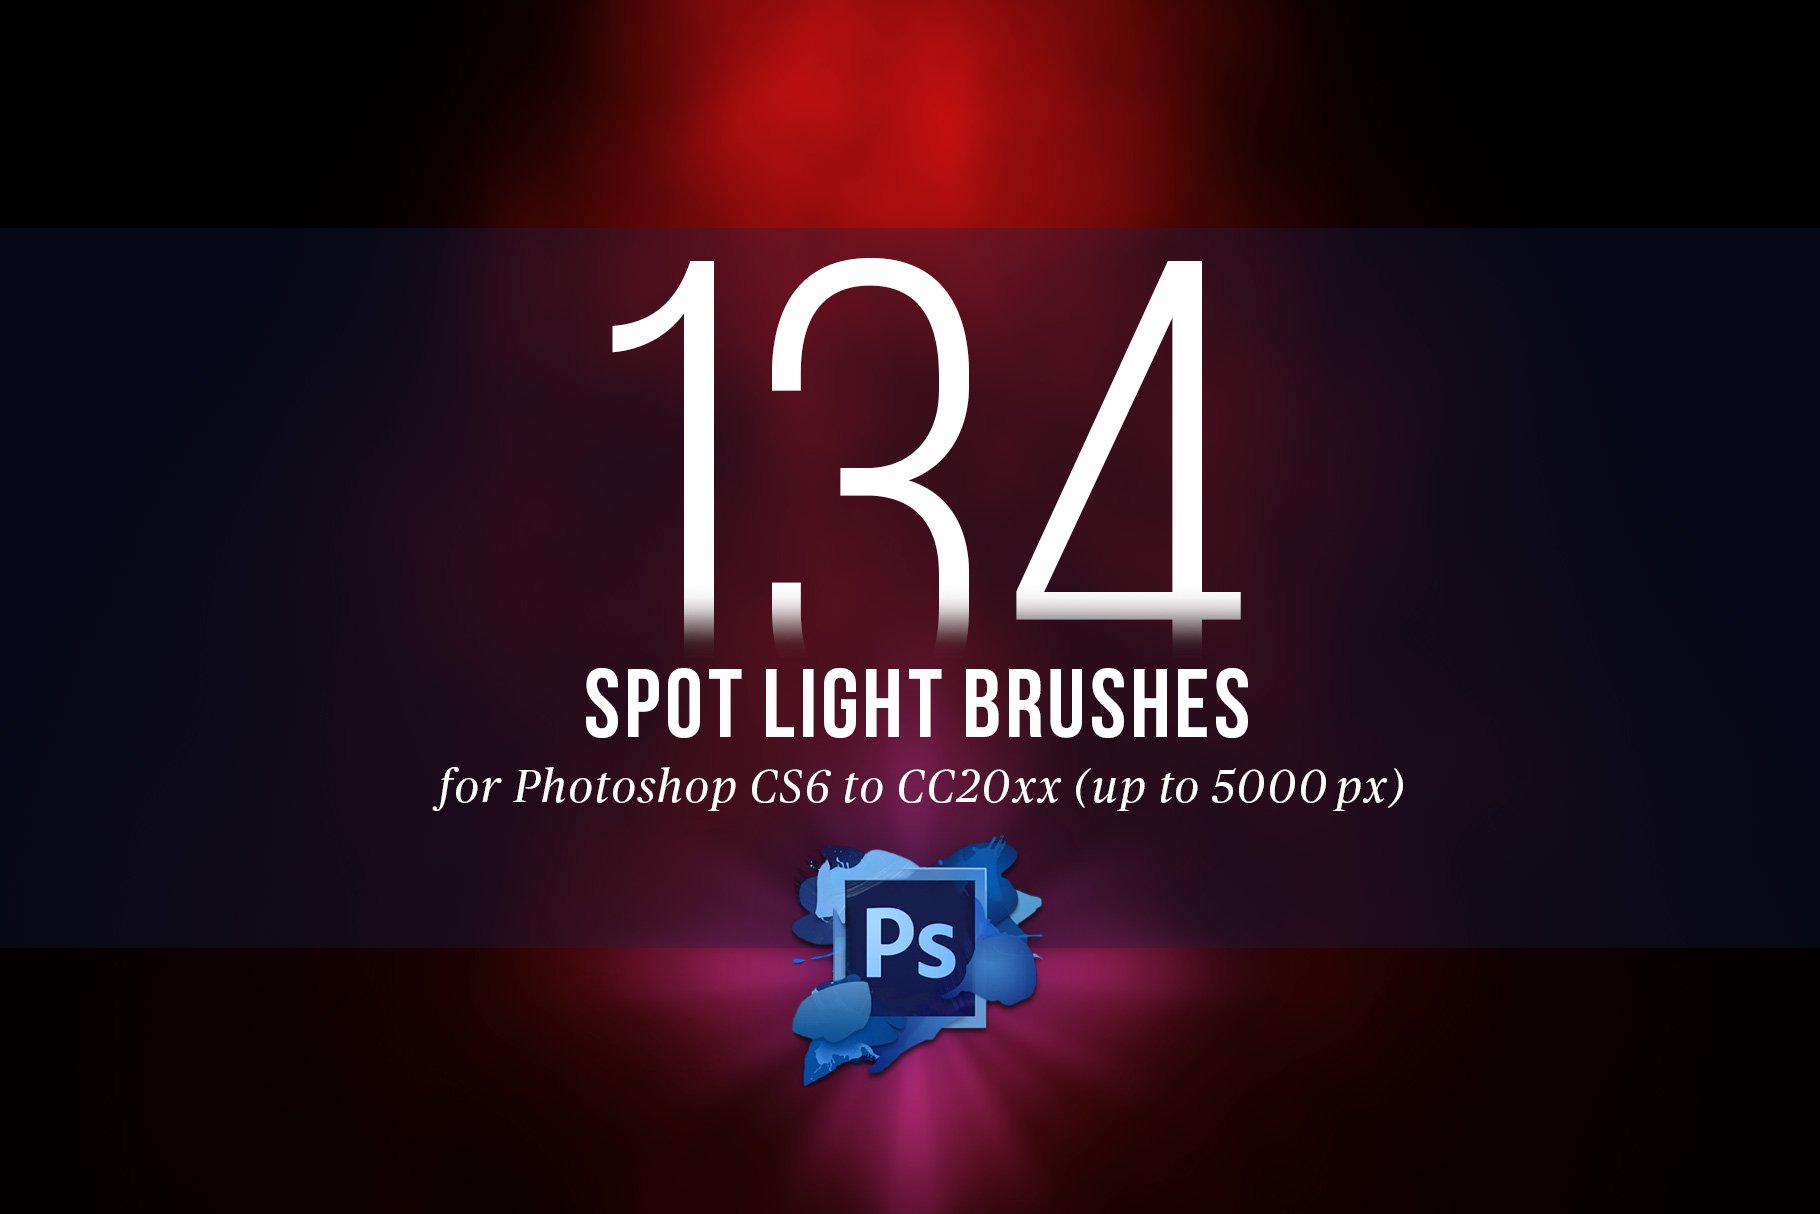 134 Spotlight Brushes for Photoshoppreview image.